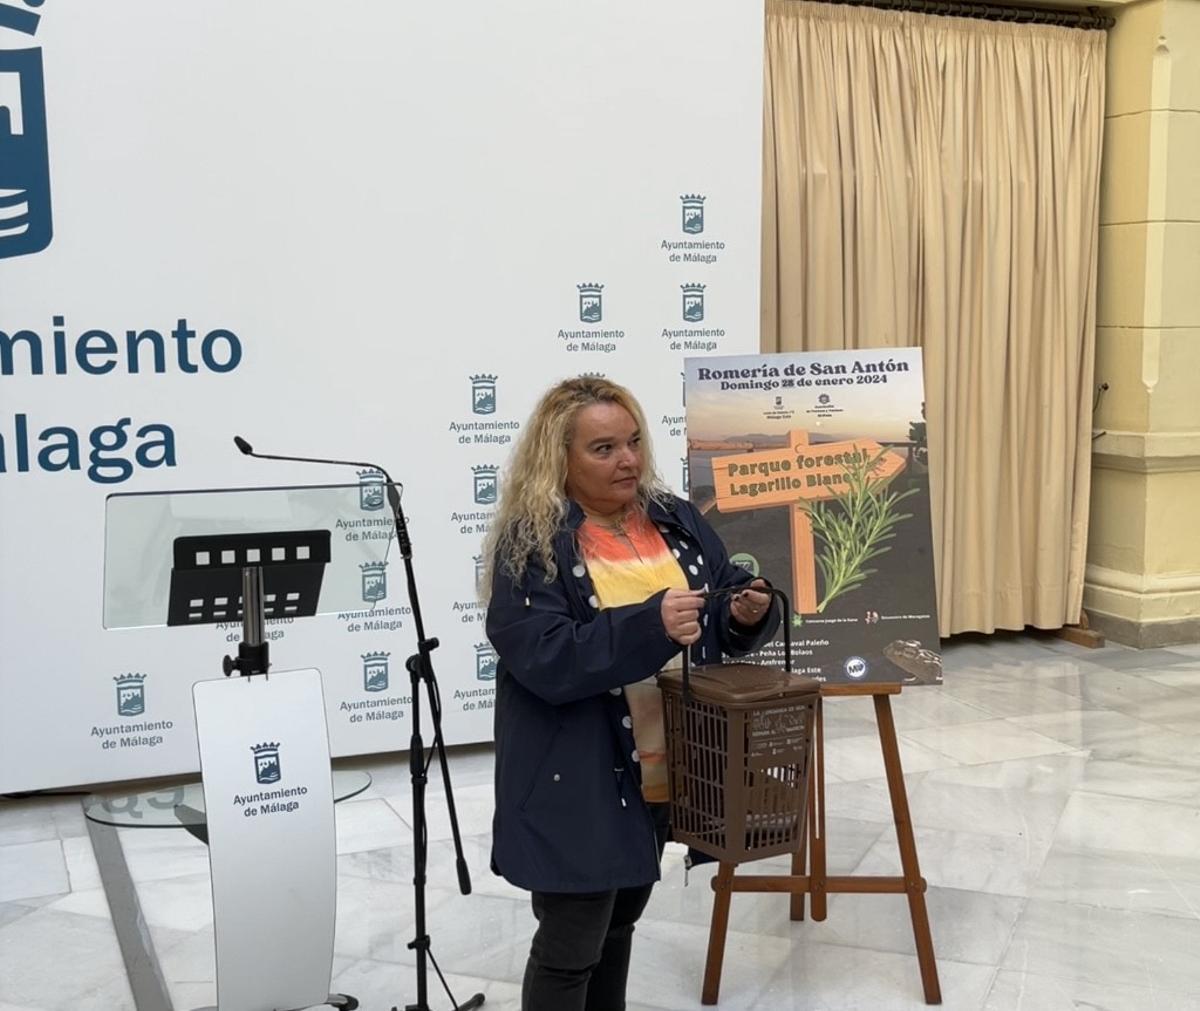 Mercedes Pires invita al Ayuntamiento a trasladar la campaña del contenedor marrón a la romería